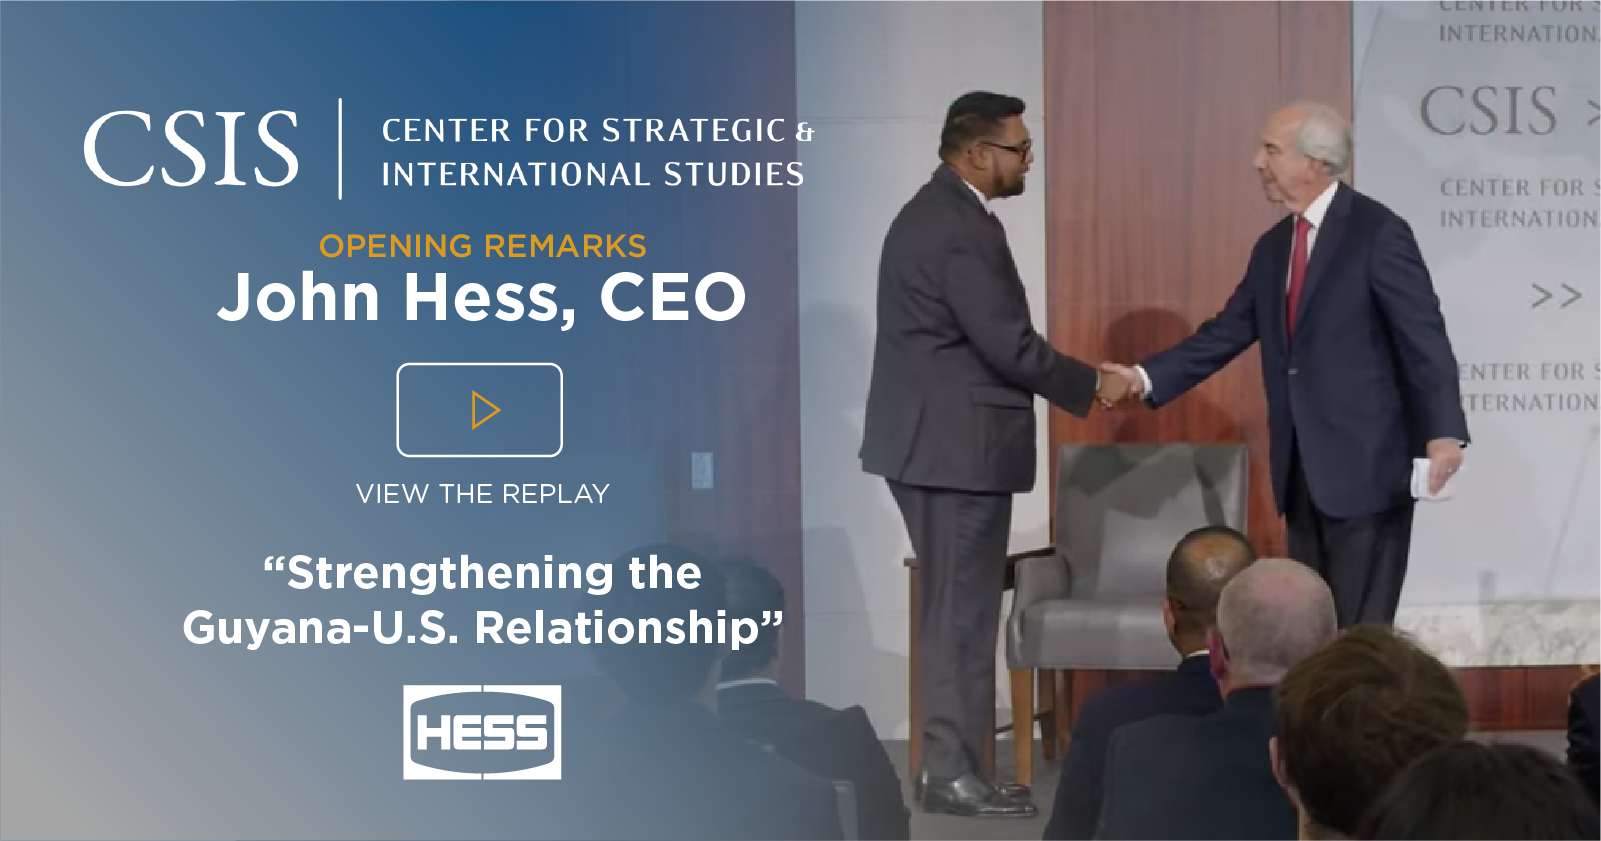 Hess - Center for Strategic and International Studies - John Hess